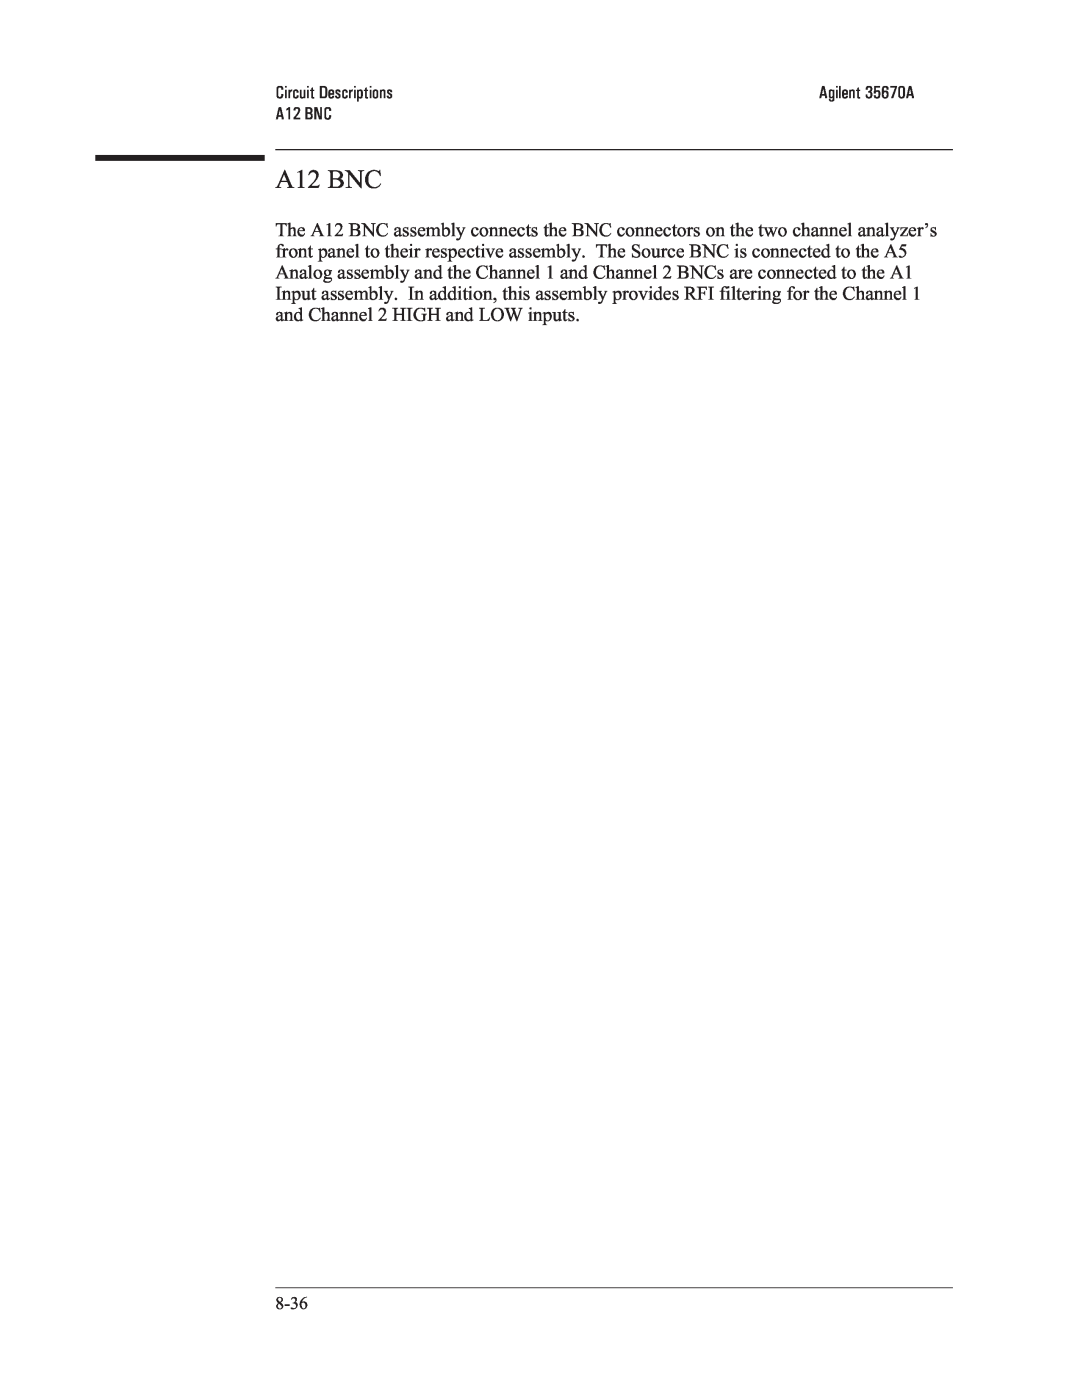 Agilent Technologies 35670-90066 manual A12 BNC, Circuit Descriptions 